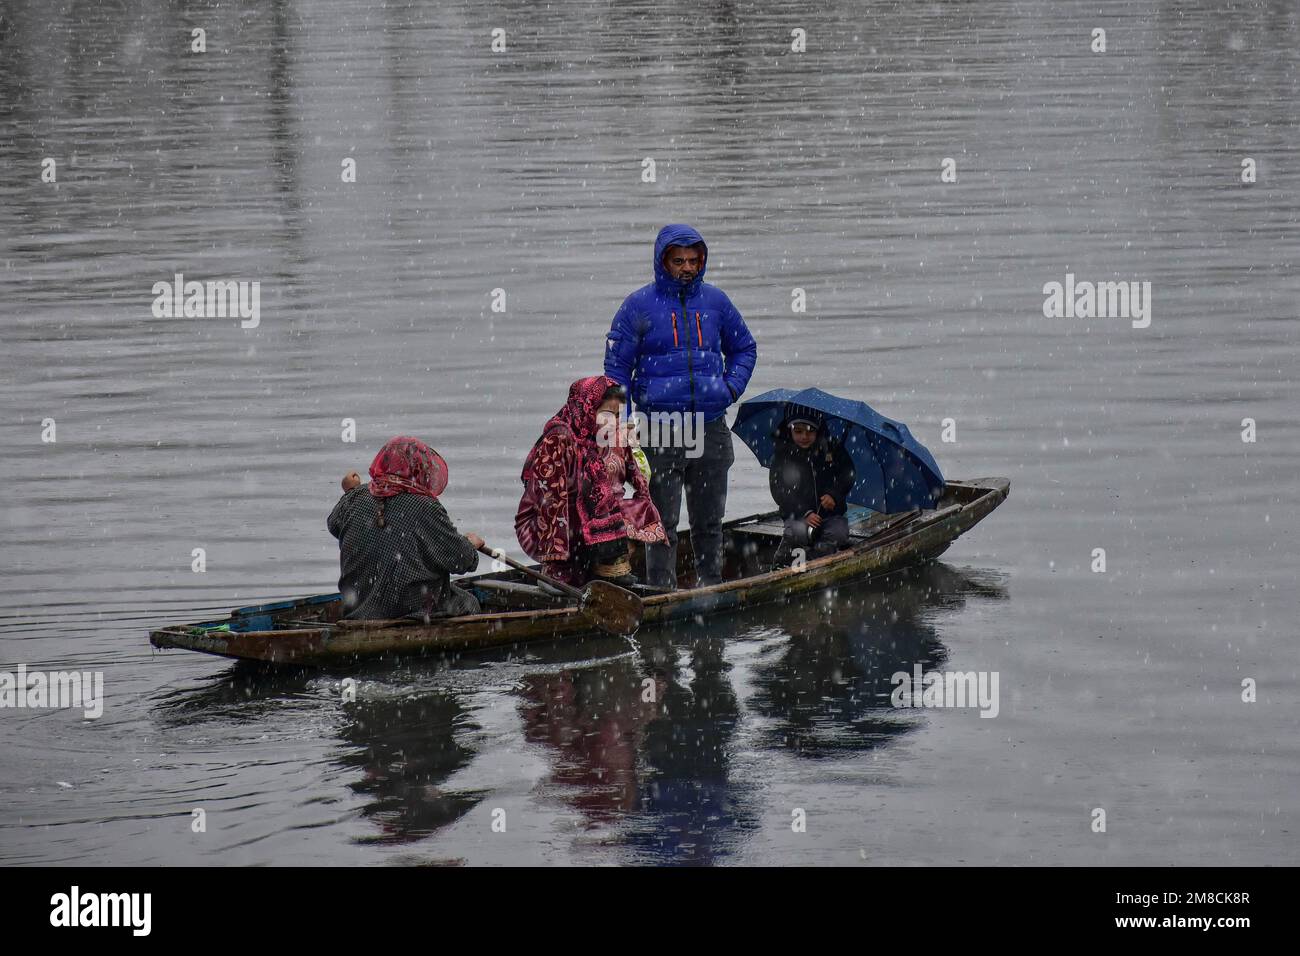 Una donna ferry la sua famiglia in una barca durante la nevicata. Parti della valle di Kashmir compreso Srinagar ha ricevuto nevicate che portano alla chiusura della vitale Srinagar-Jammu autostrada nazionale e la cancellazione delle operazioni di volo, funzionari qui ha detto. Foto Stock